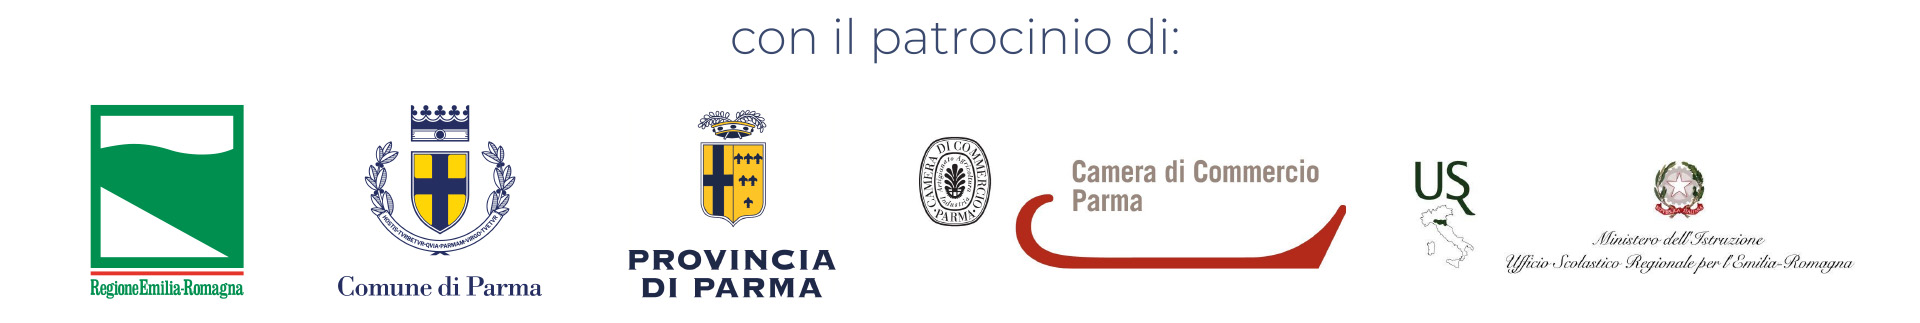 con il patrocinio di: Regione Emilia-Romagna - Comune di Parma - Provincia di Parma - Camera di Commercio di Parma - Ministero dell'Istruzione, Ufficio Scolastico Regionale per l'Emilia-Romagna